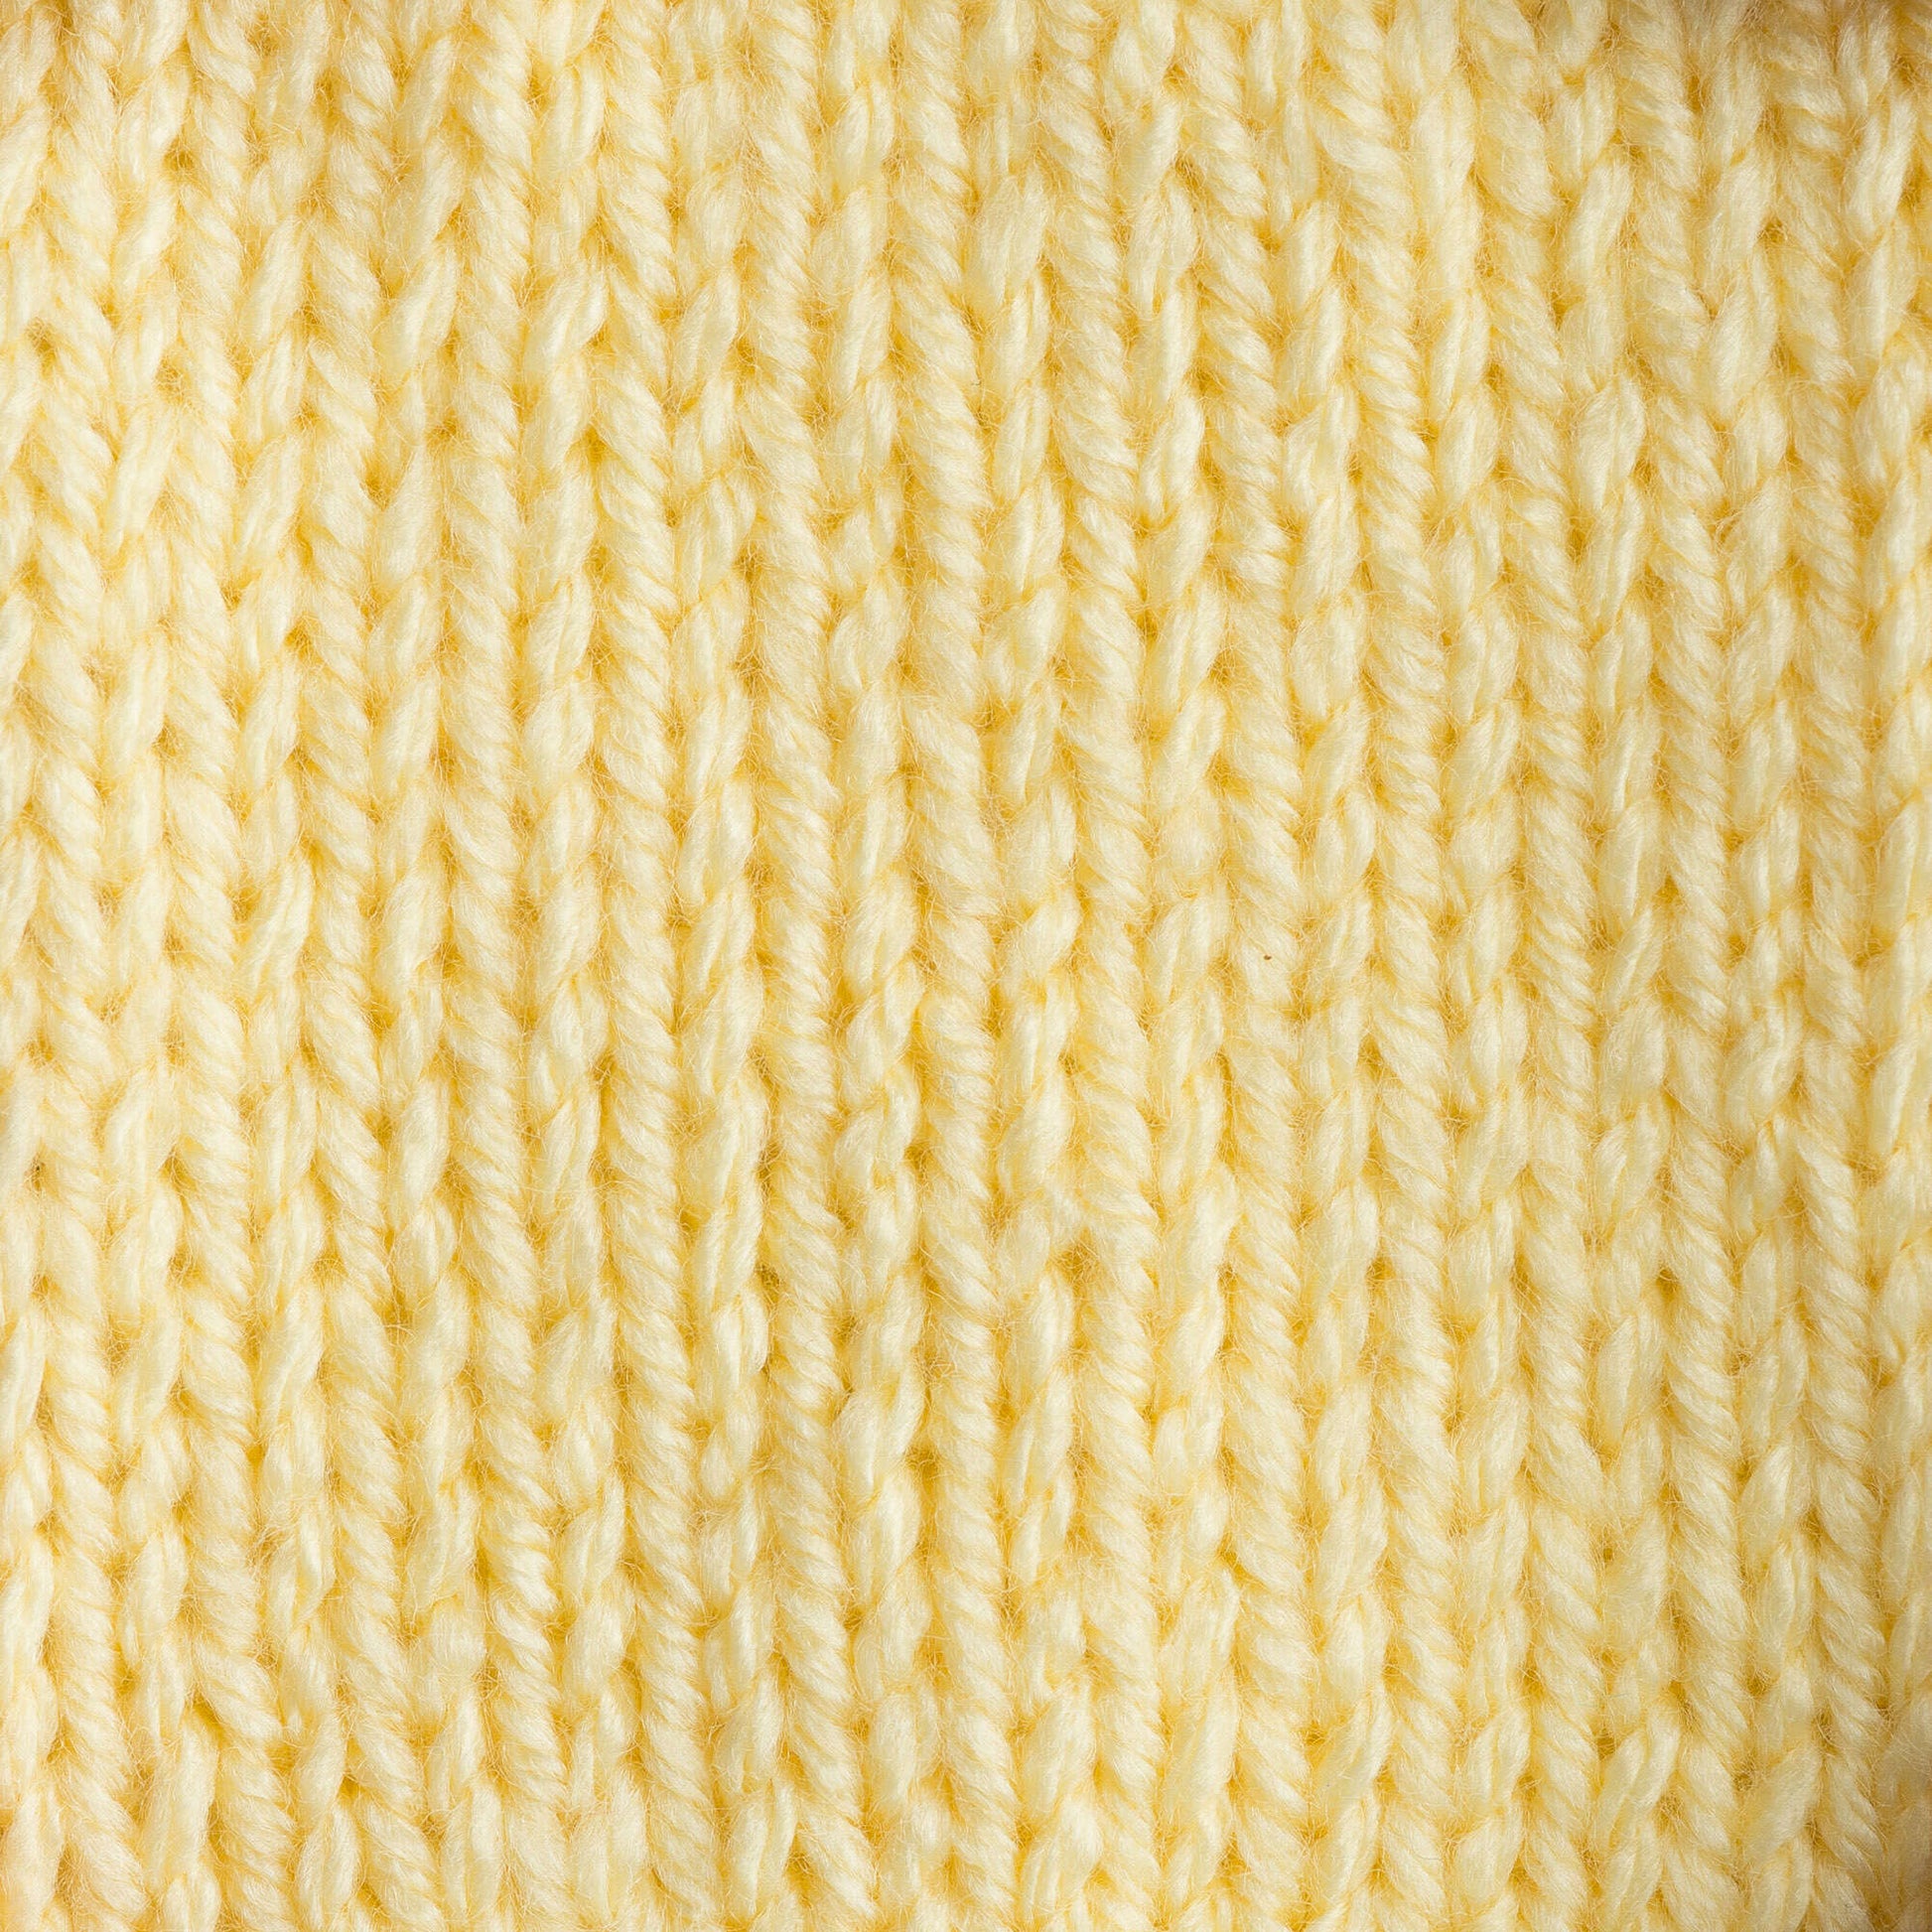 Bernat Premium Yarn Baby Yellow